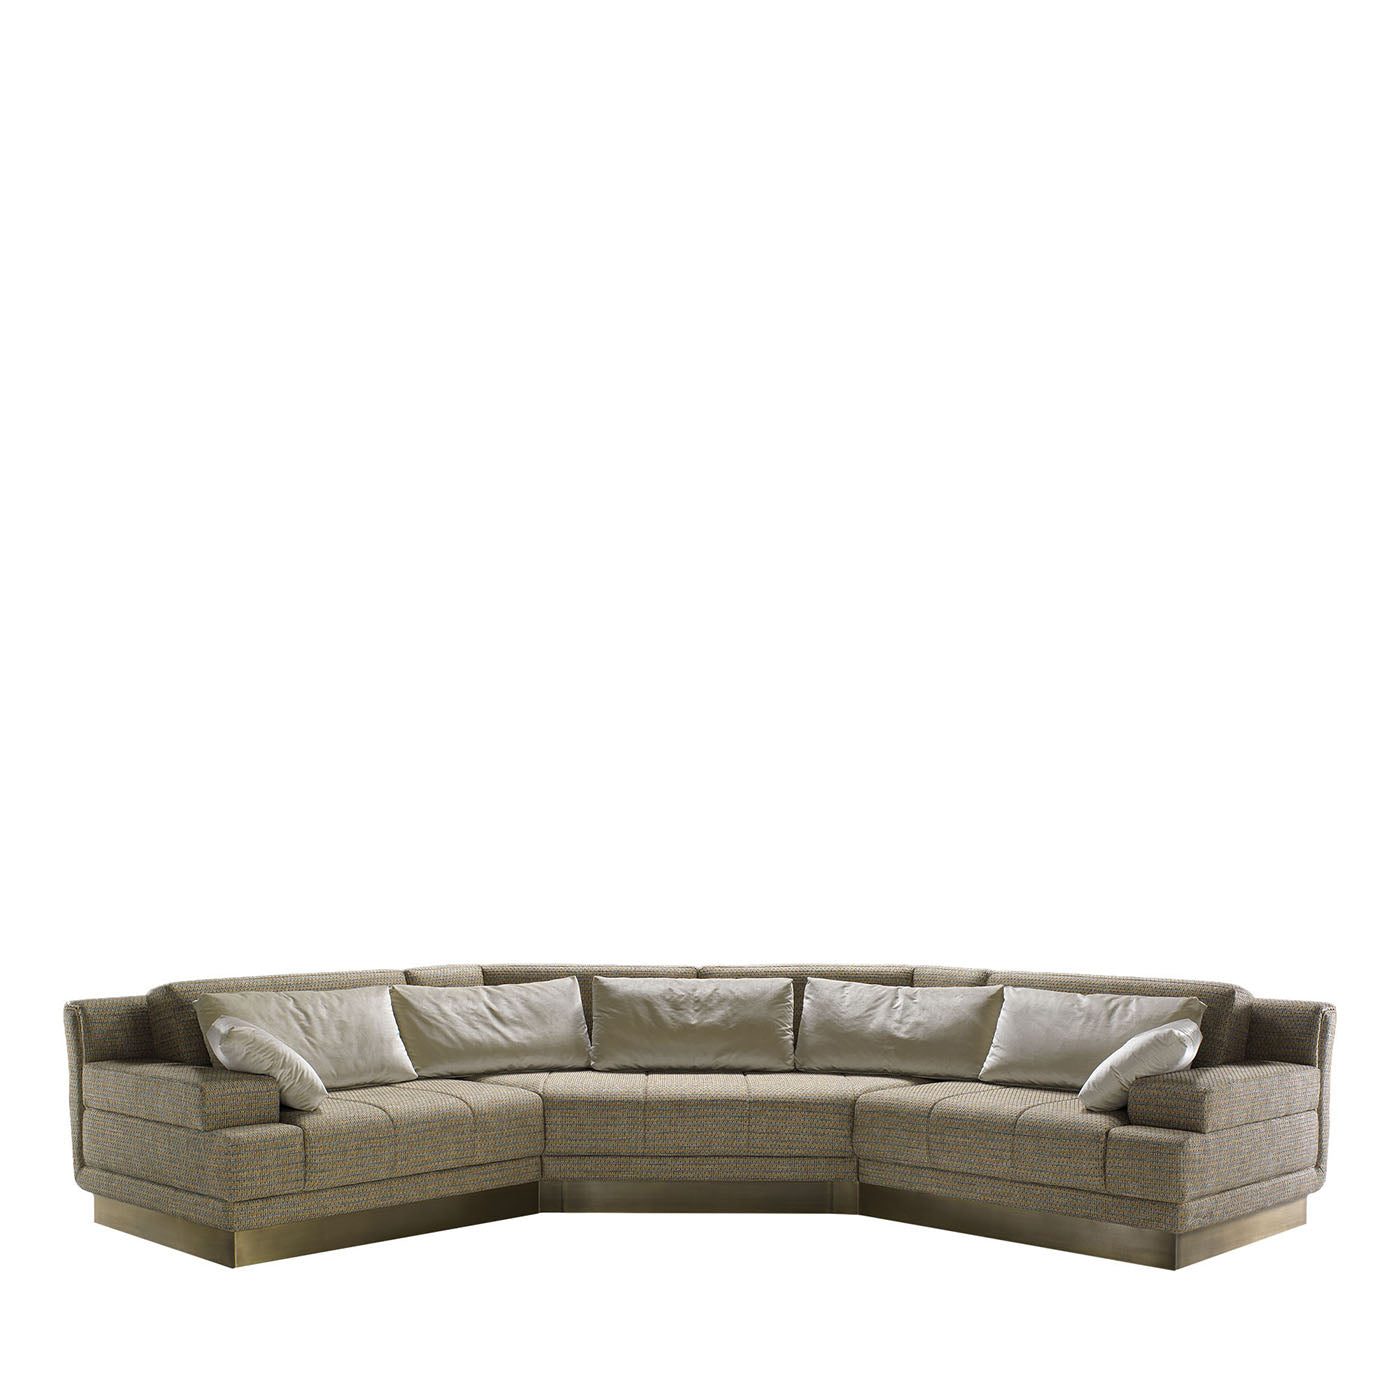 Boulevard Melange Brown & Gray Modular Sofa - Vue principale